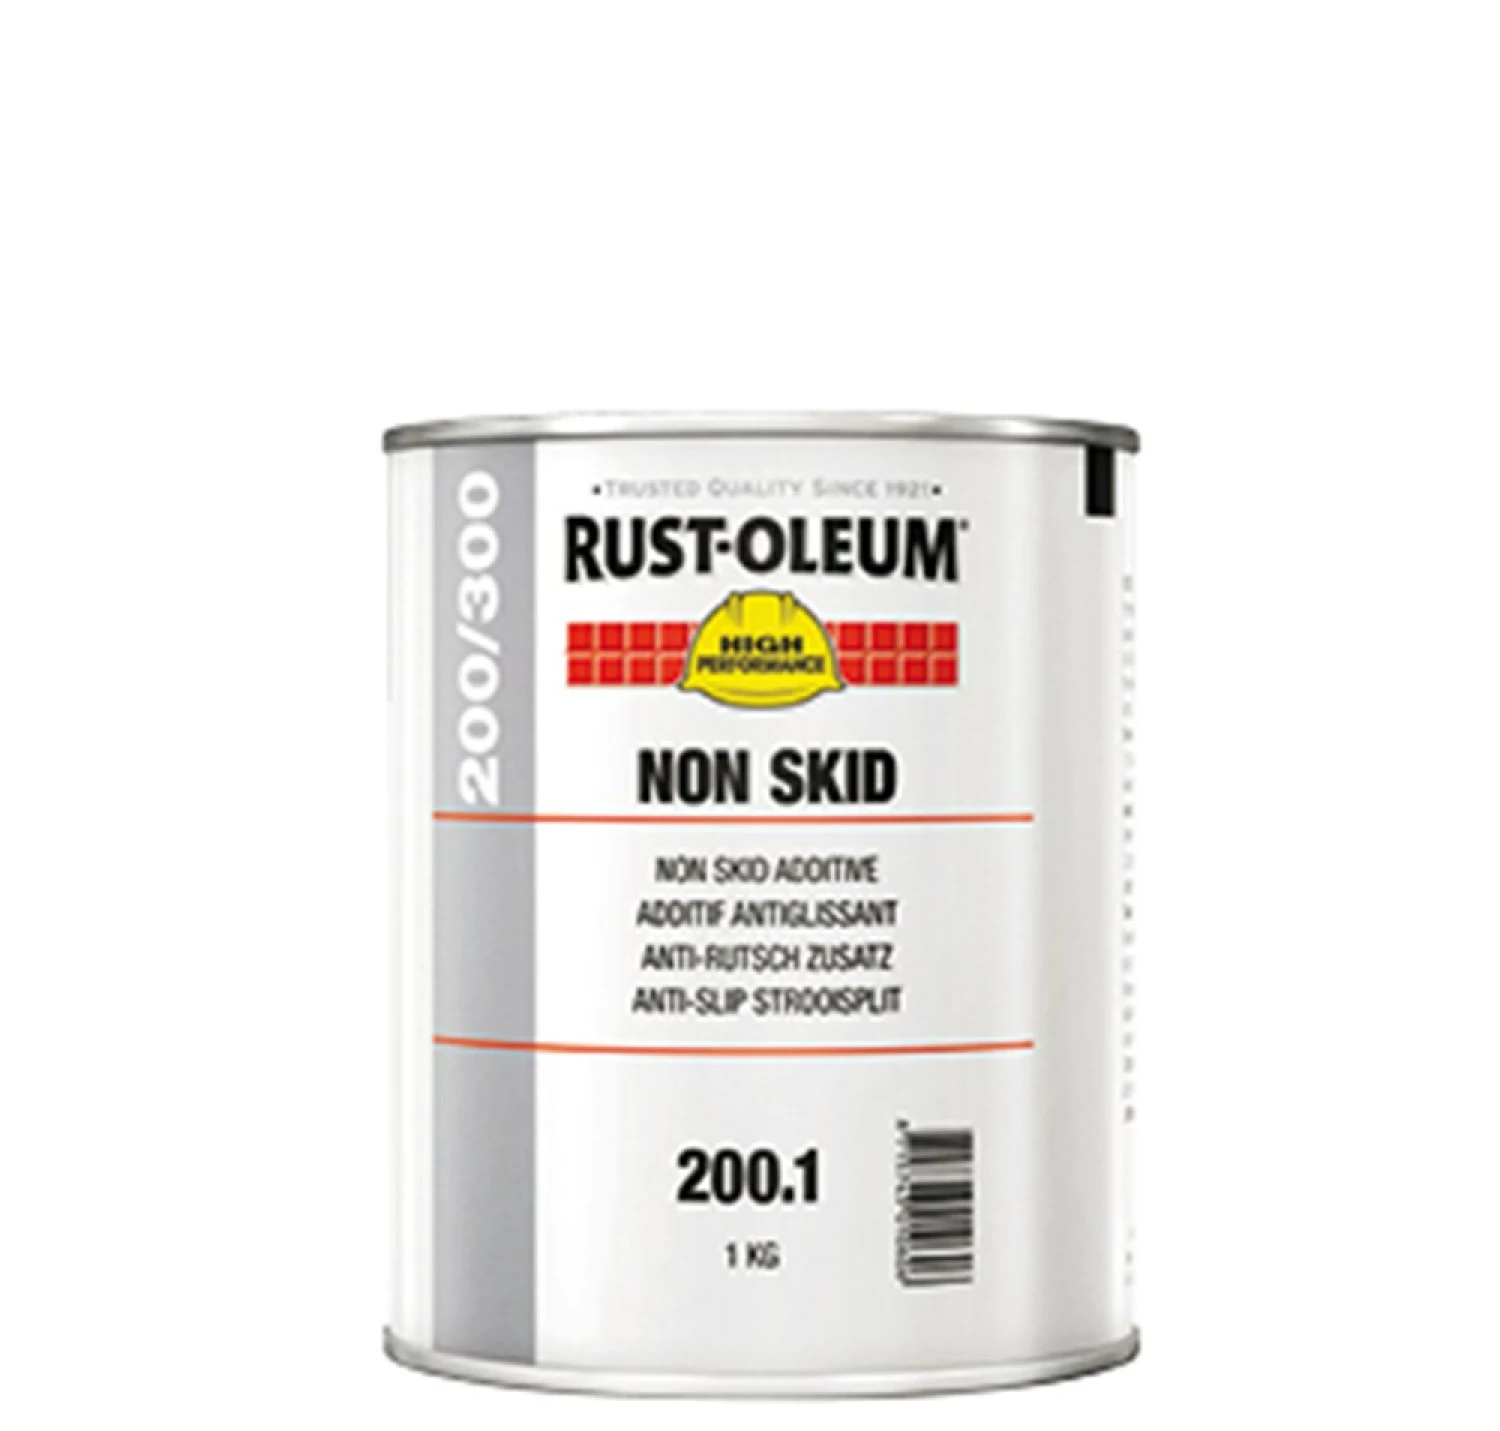 Rust-Oleum Ns200 Non-Skid Additive 15Kg-image